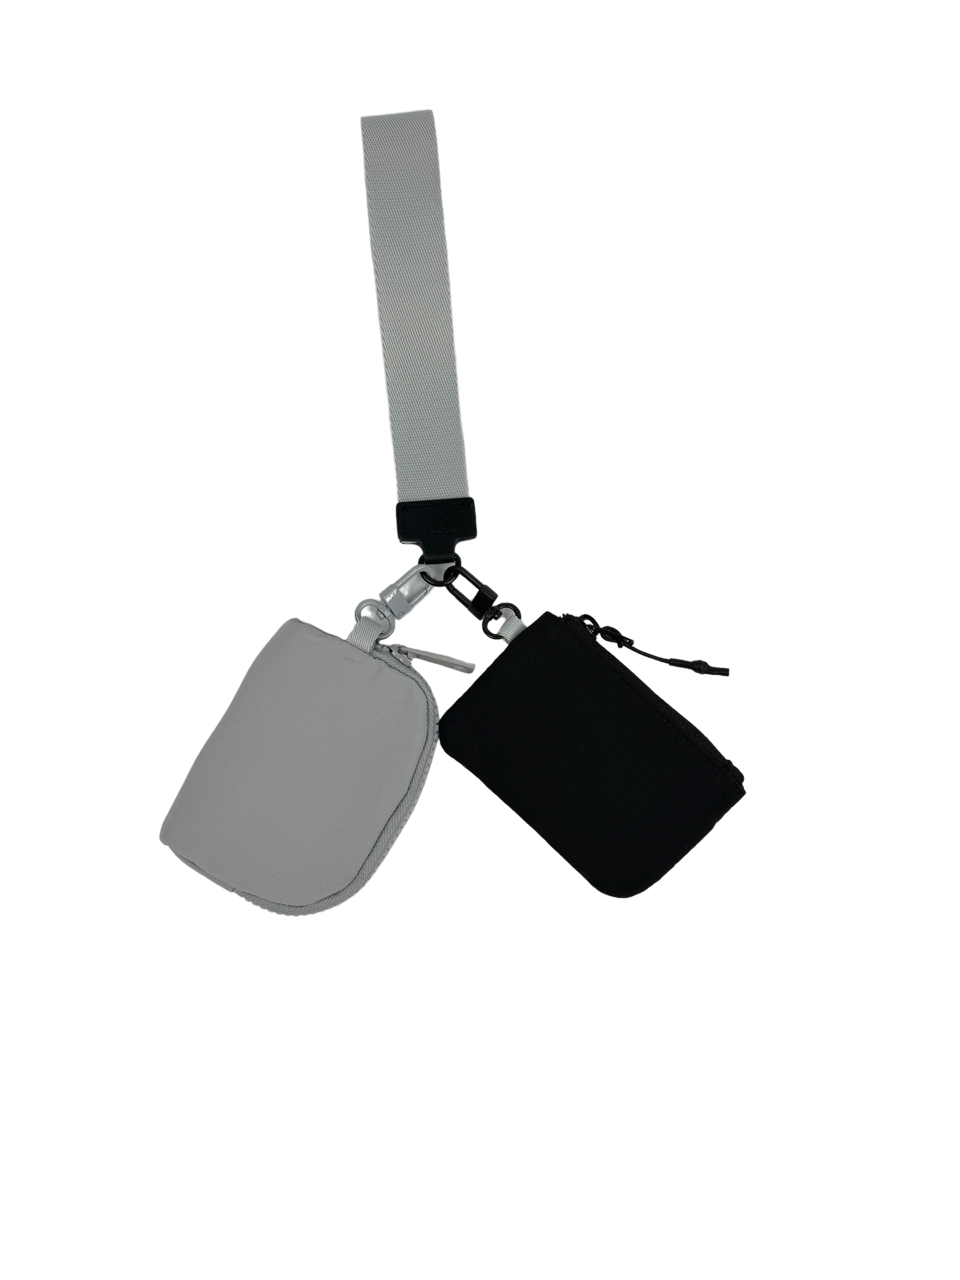 LL-4320 Wristlet Key Chain Double Pouch Black Grey